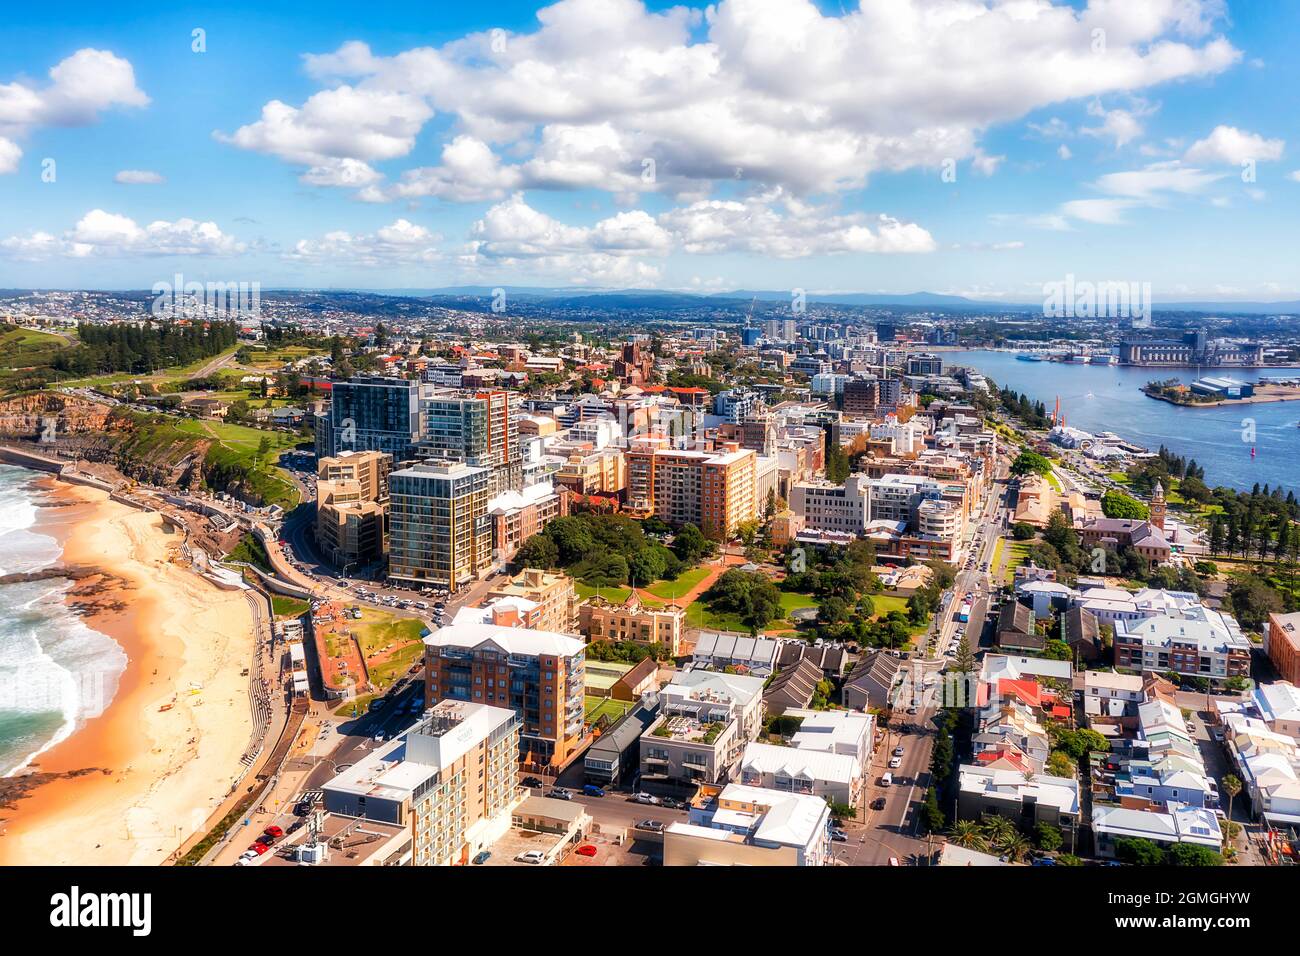 Die Innenstadt von City of Newcastle in NSW, Australien an der Pazifikküste - großer Industriestandort am Hunter River. Stockfoto